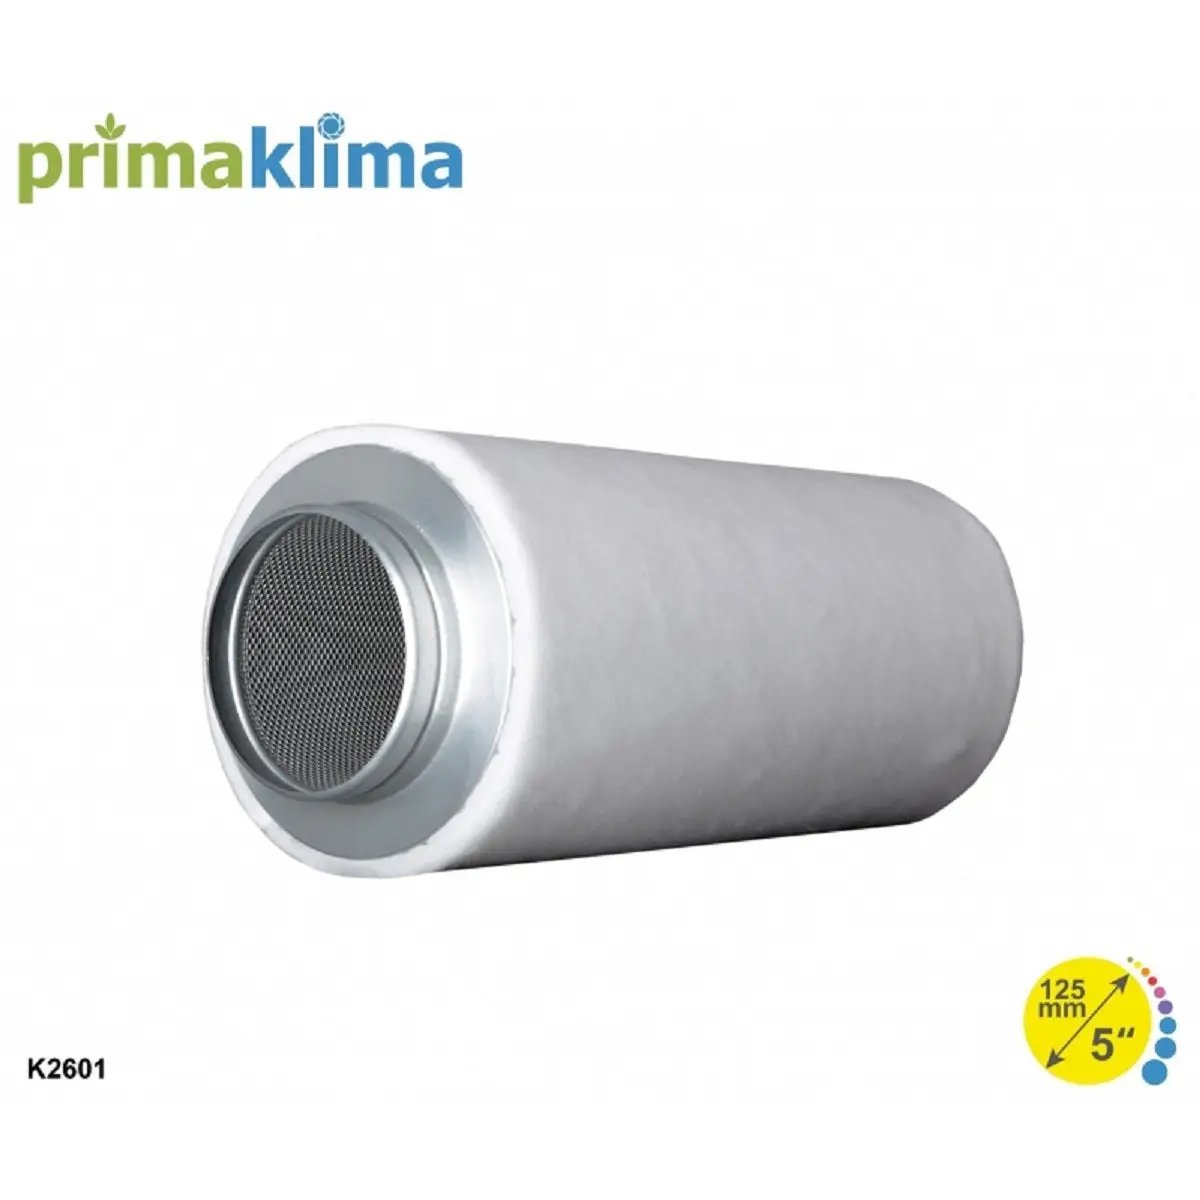 Filtre à charbon Prima Klima Ecoline k2601 de 125mm